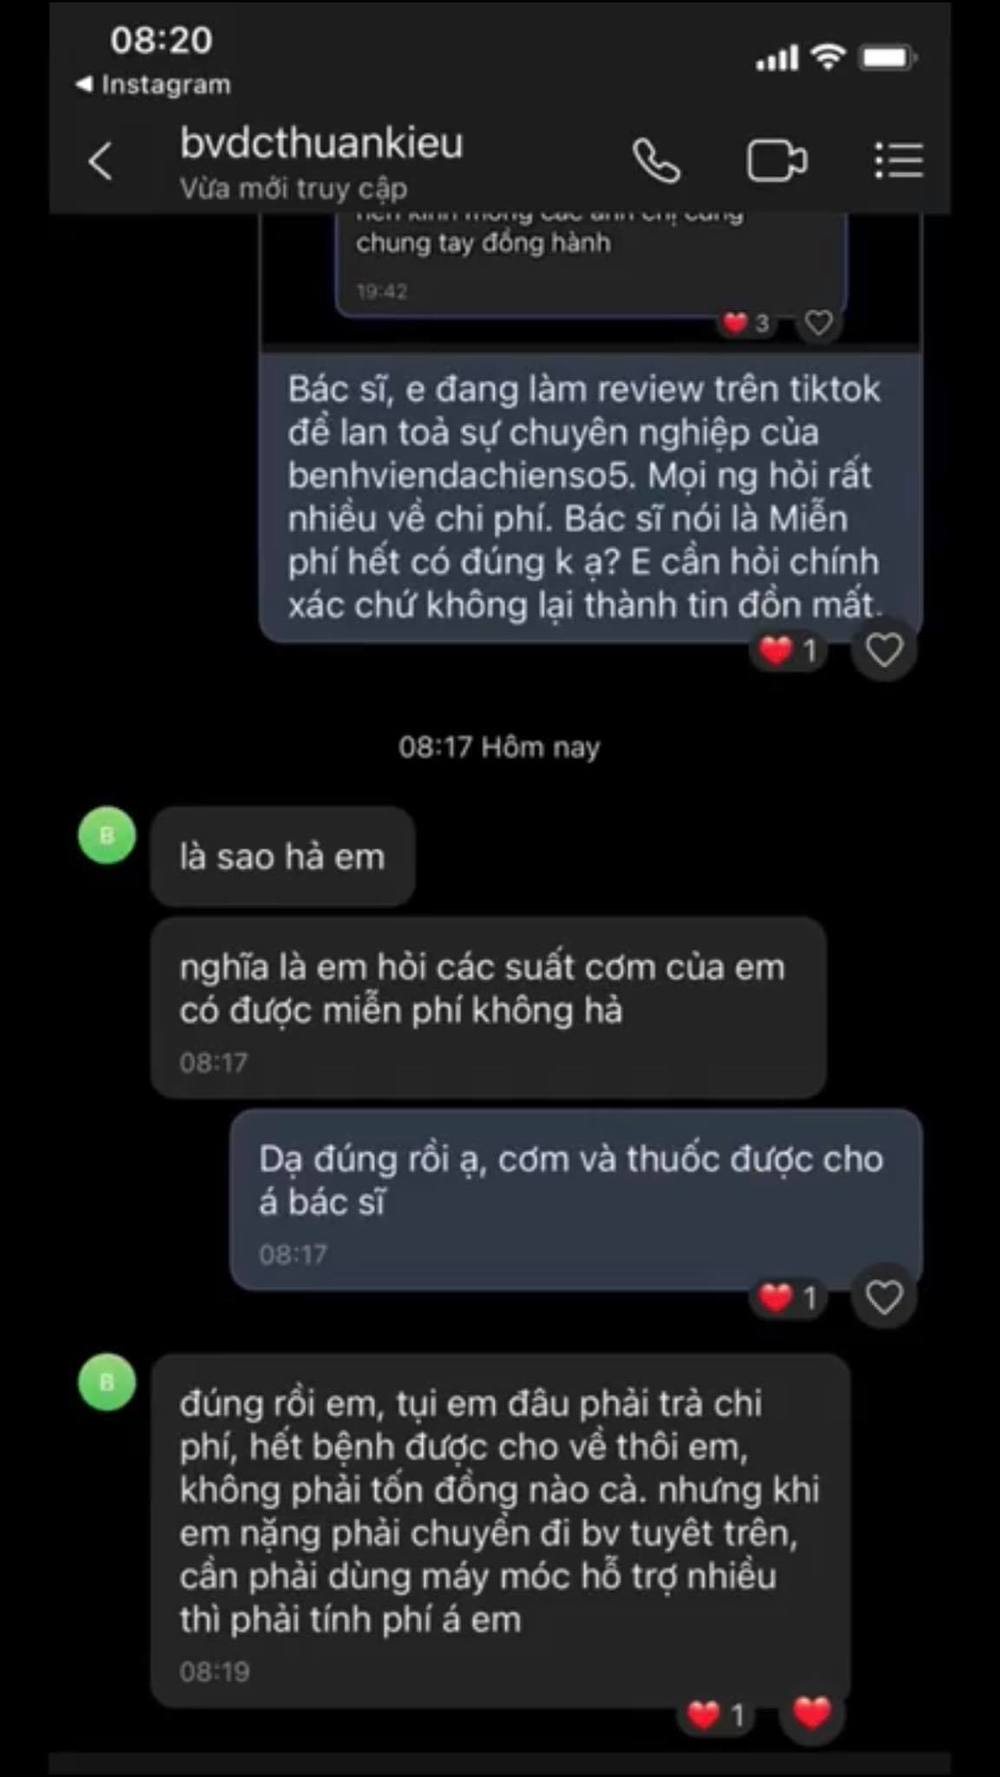  
Cô gái chia sẻ đoạn tin nhắn với bác sĩ tại khu cách ly ở Thuận Kiều Plaza, xác nhận chi phí điều trị ở đây là miễn phí 100%. (Ảnh: Chụp màn hình)